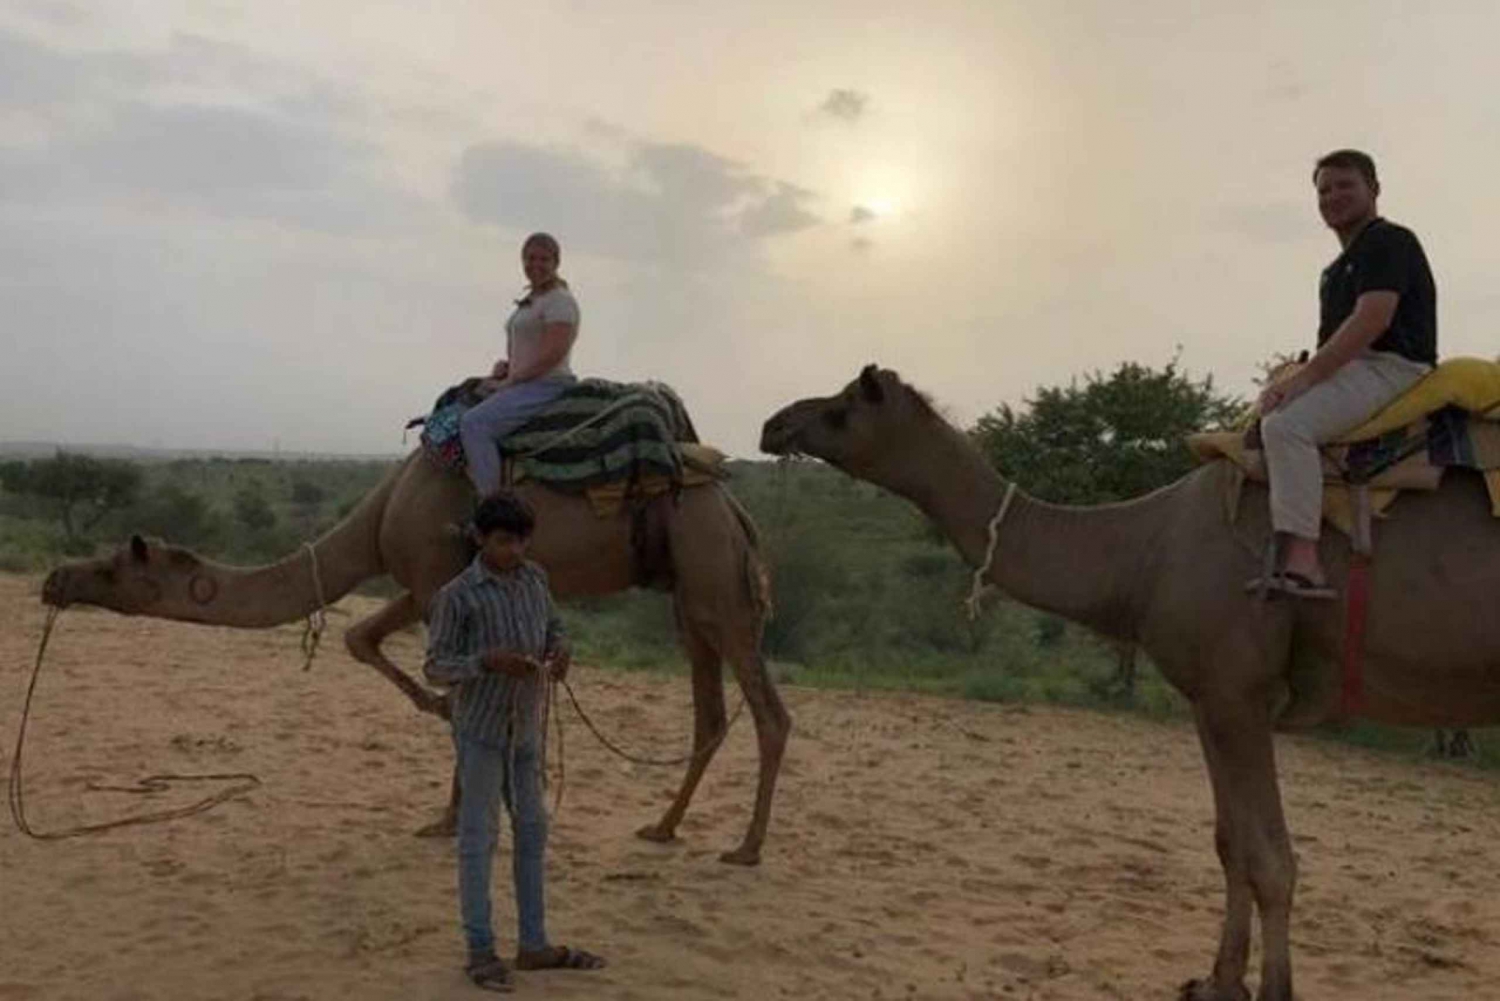 Dagstur med kamelsafari i ørkenen i Jodhpur